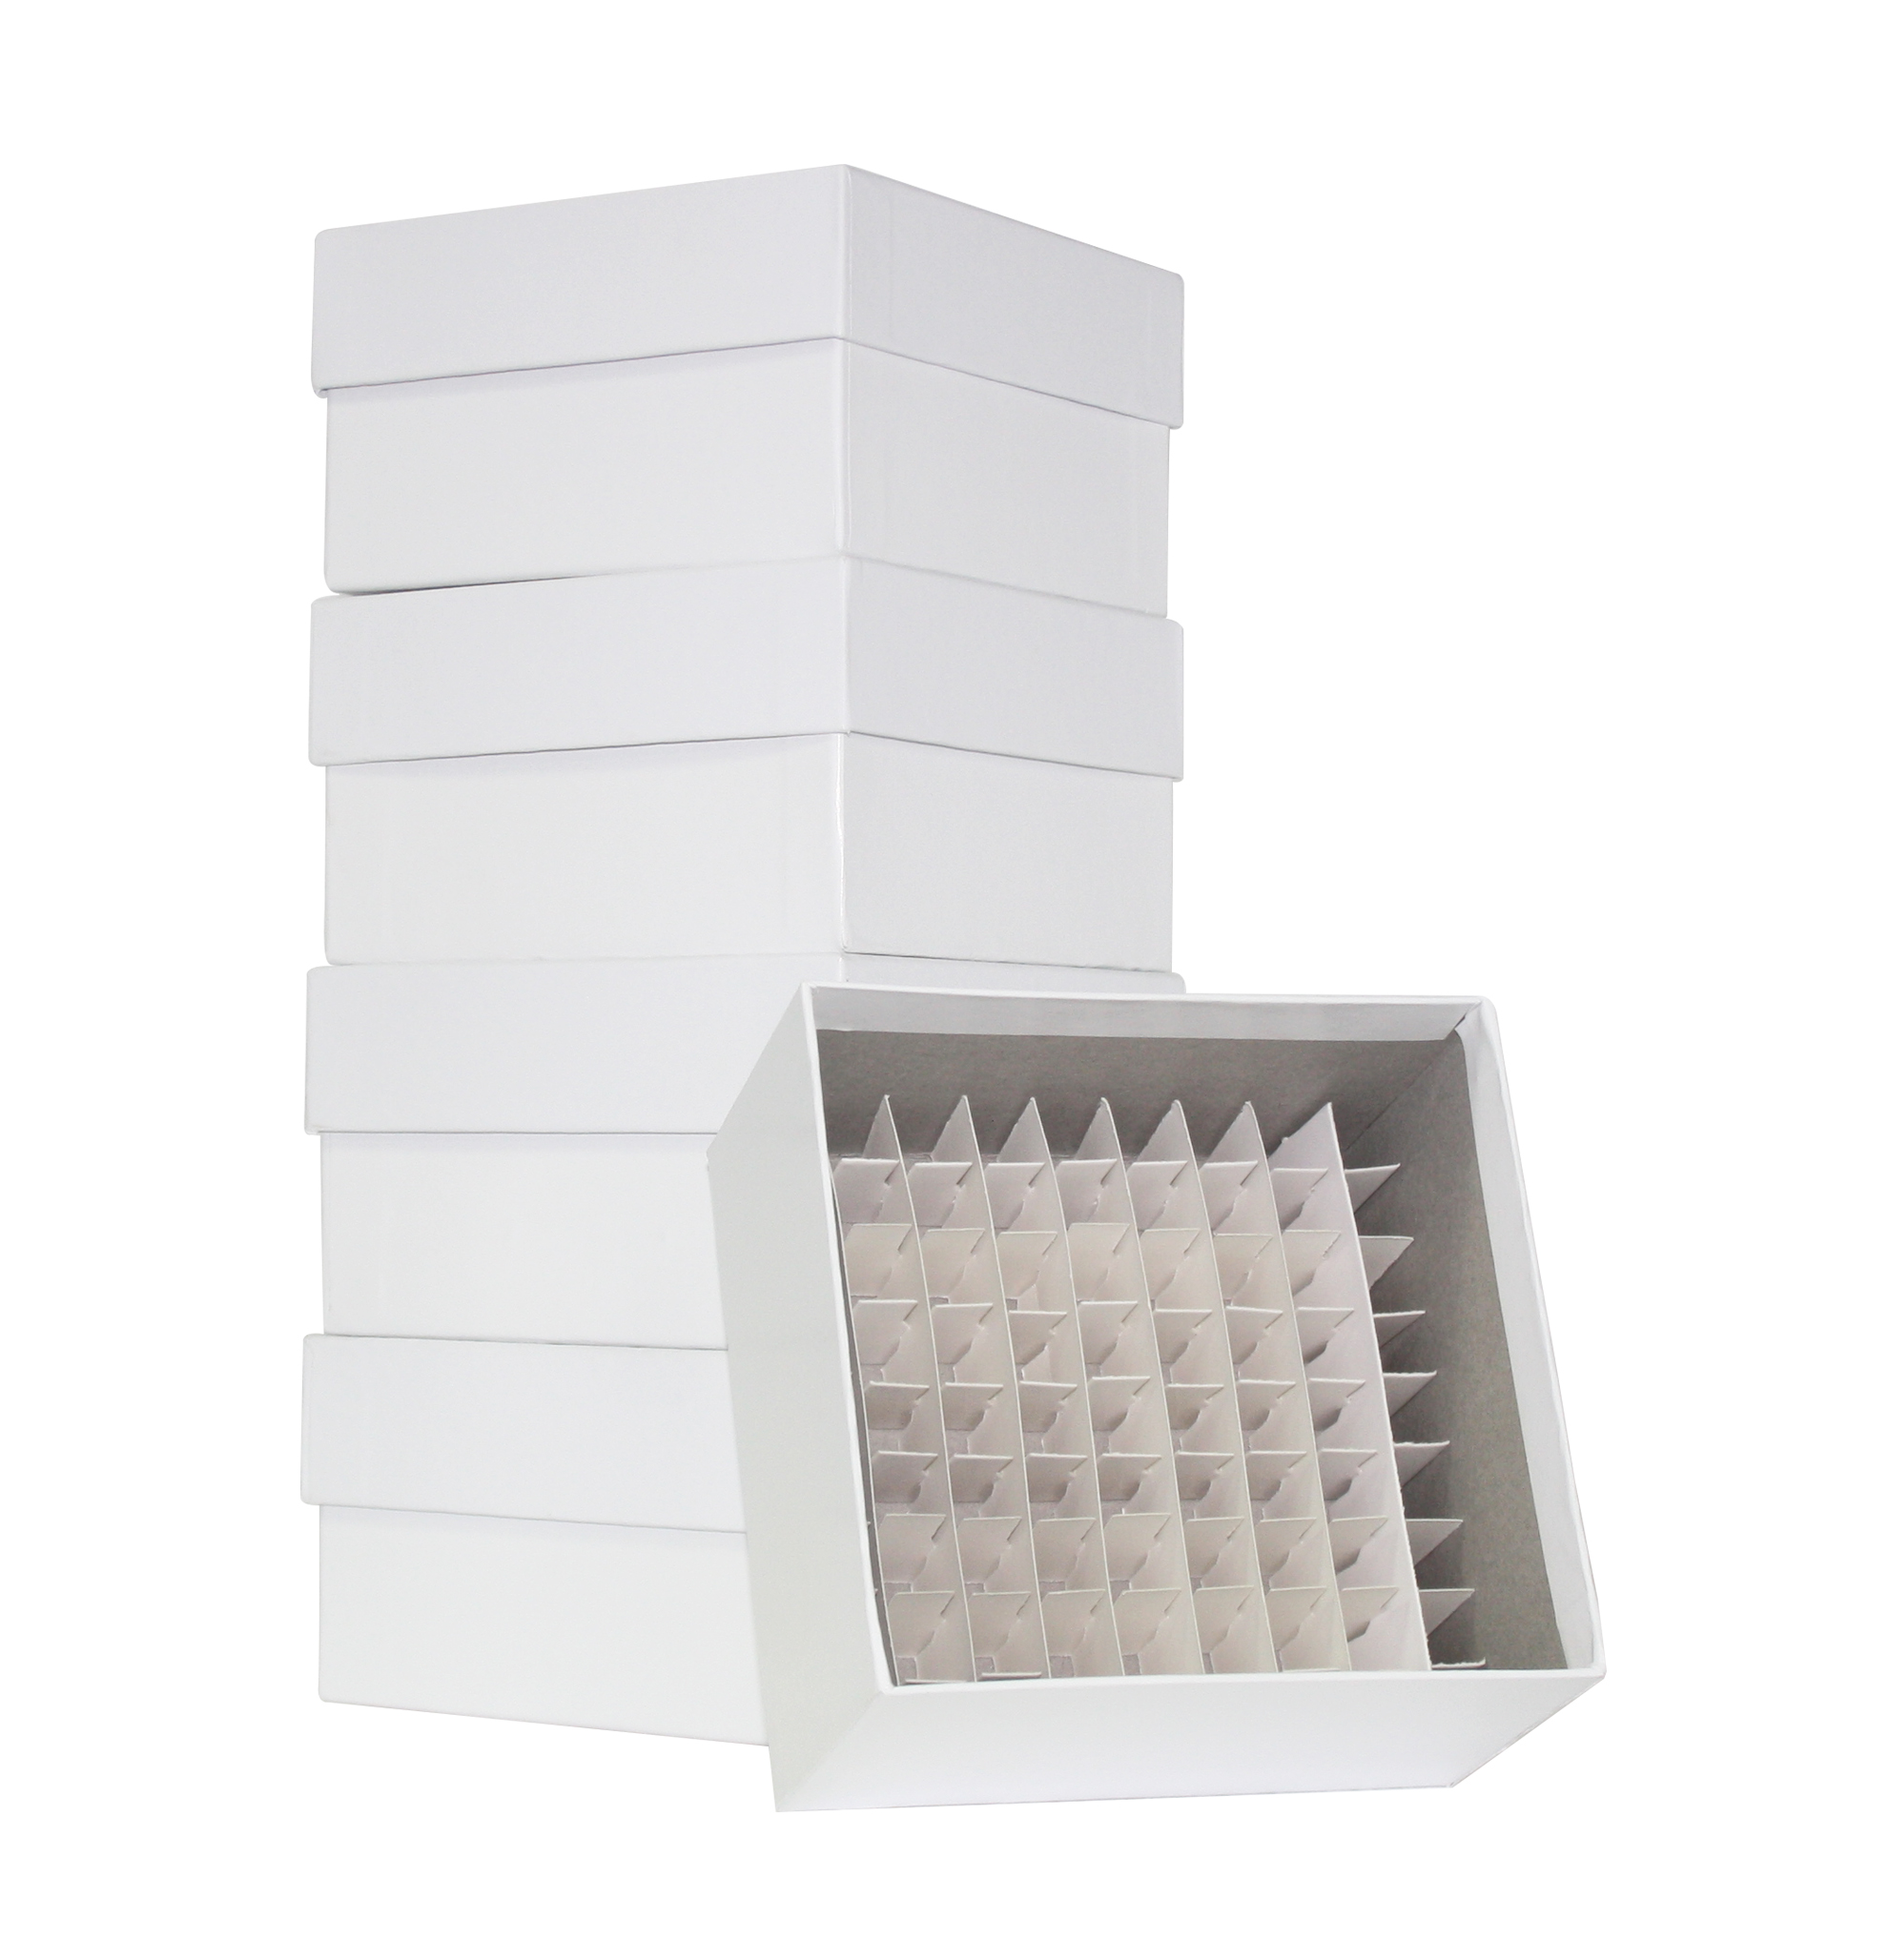 Cardboard Freezer Storage Box, 3 Inch, 81 place/ p